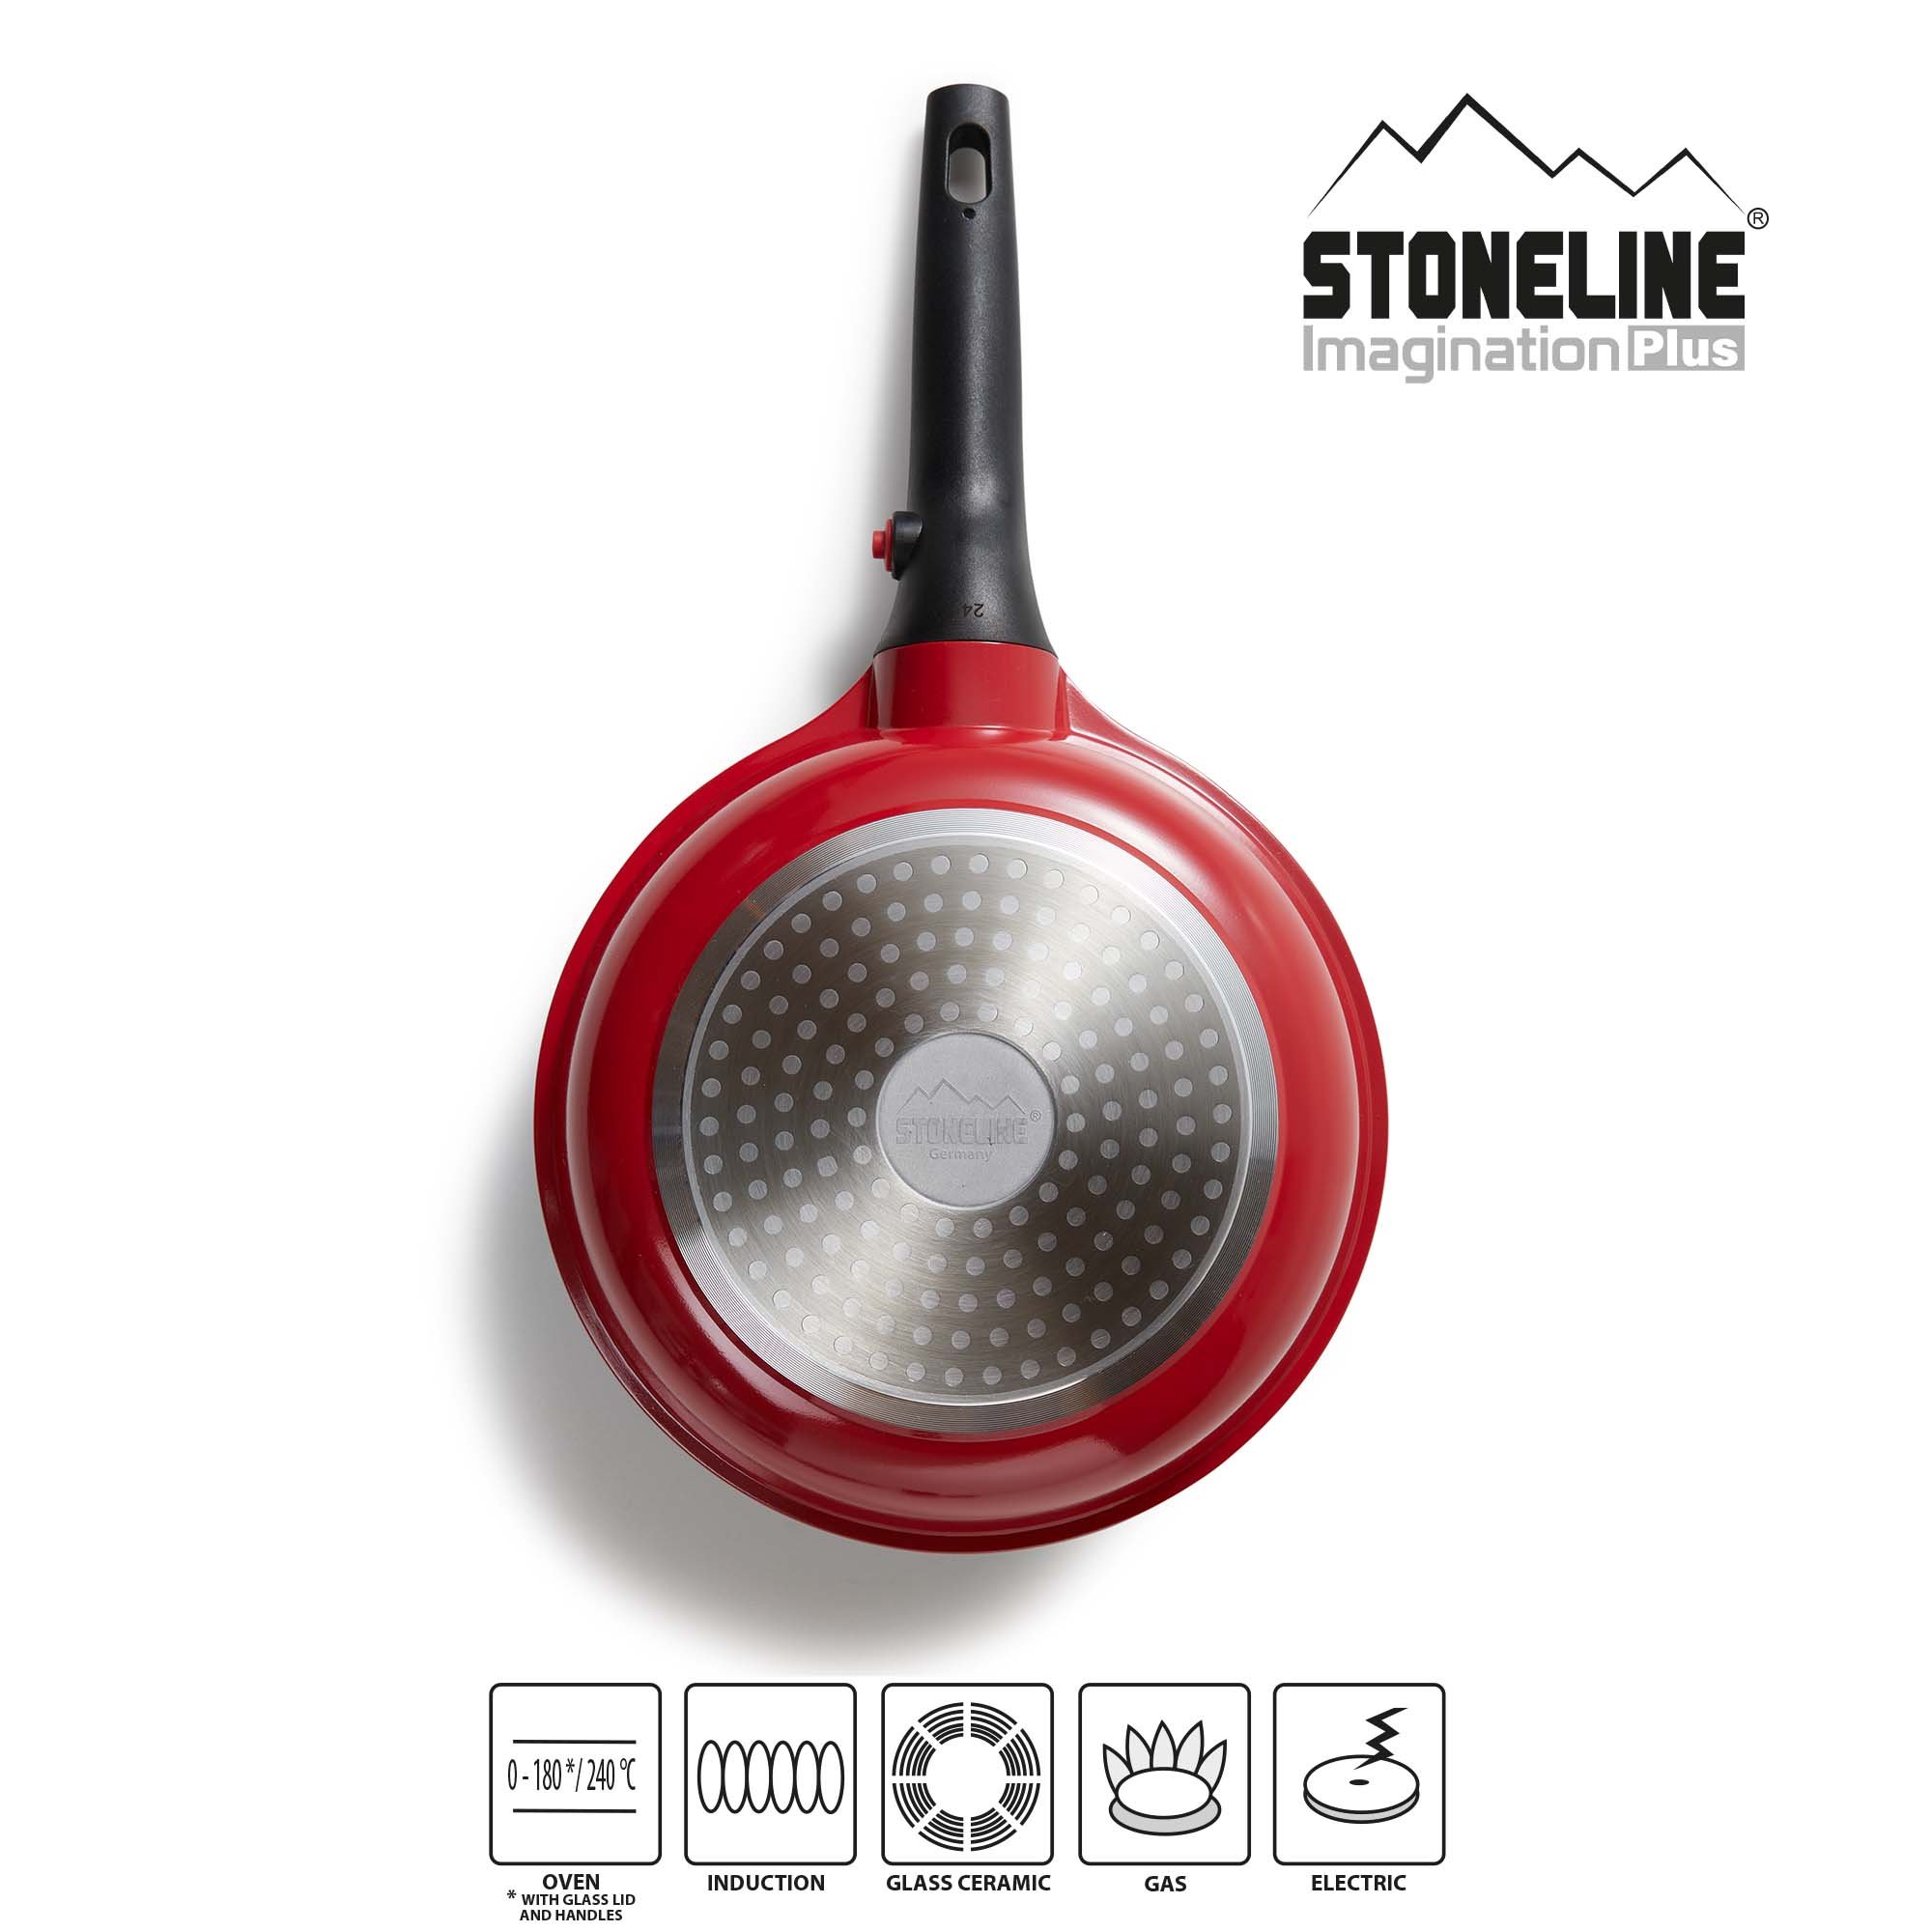 STONELINE® 8 pc Cookware Set with Lids Removable Handles, Non-Stick | Imagination PLUS